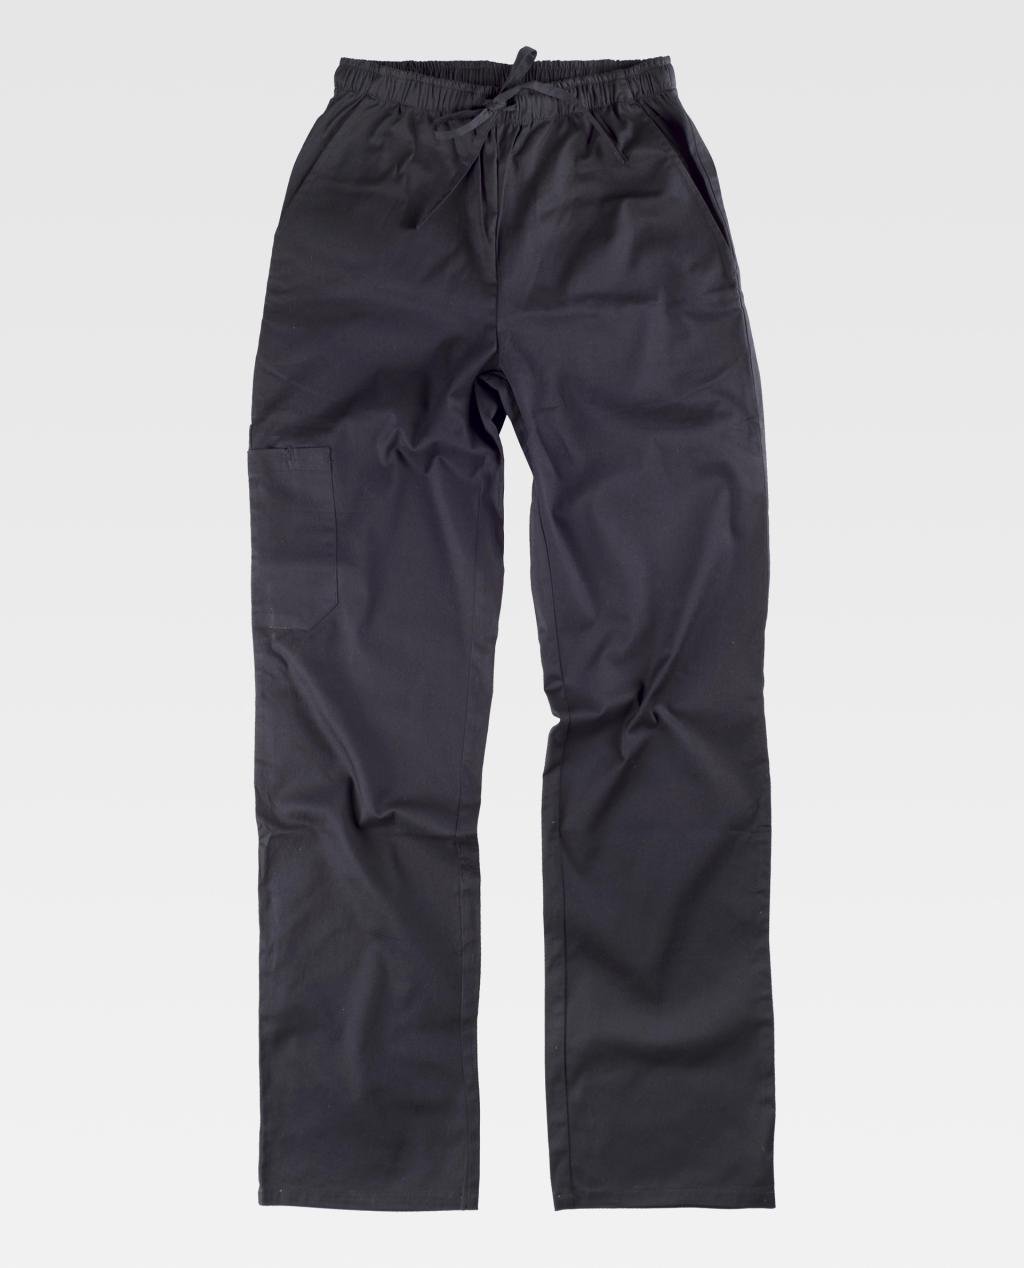 8_kit-pantalone-e-casacca-unisex-elasticizzato.jpg